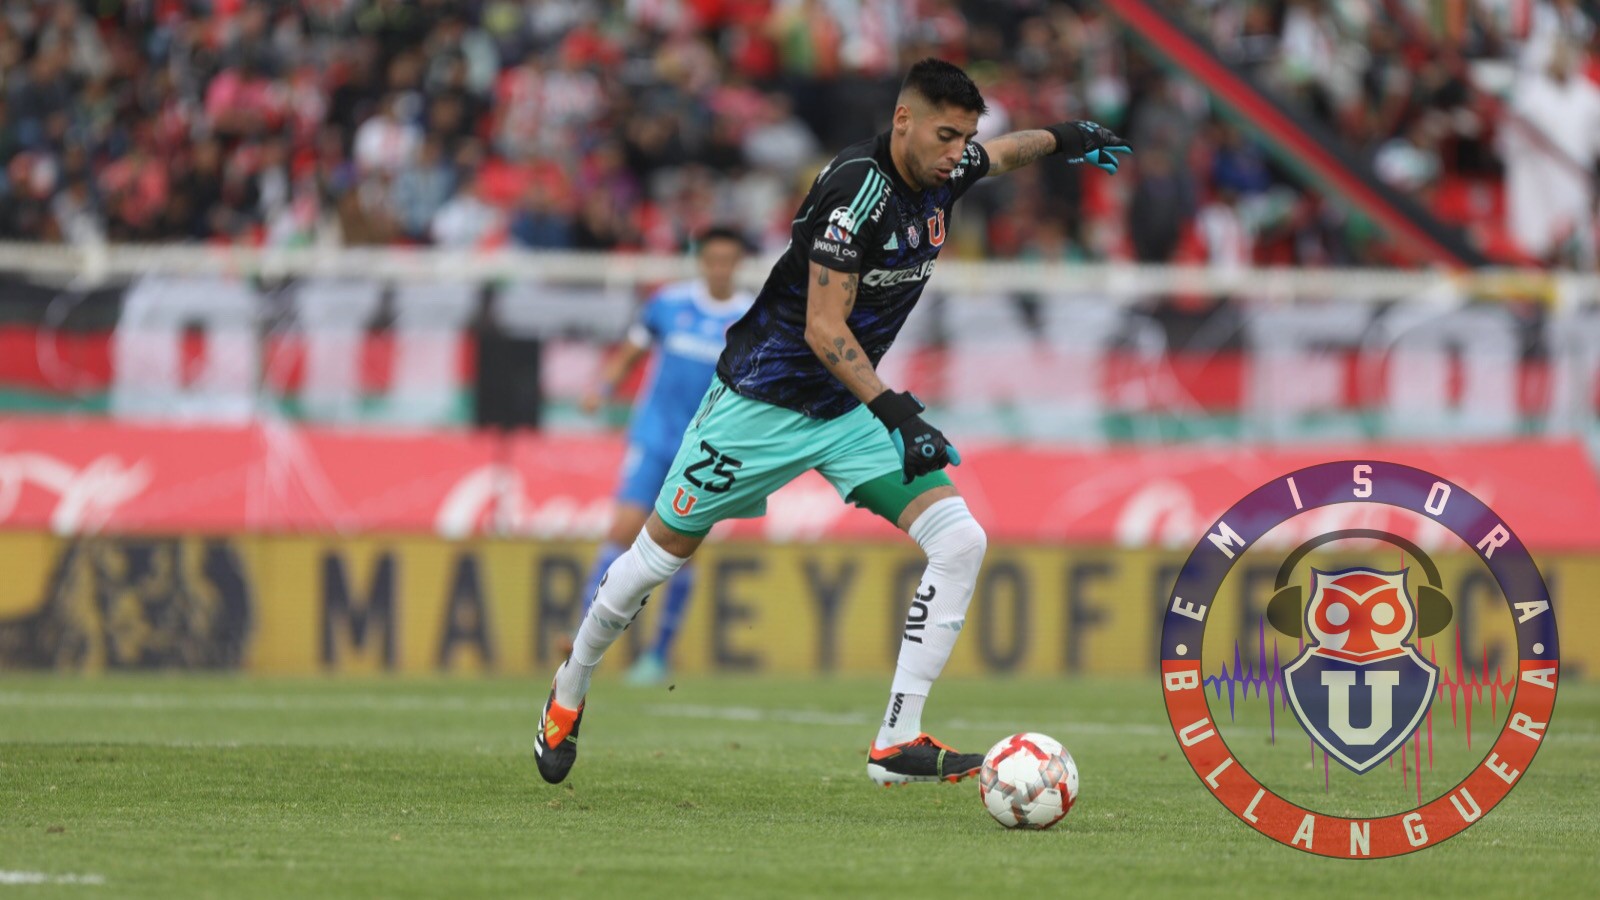 Gabriel Castellón le pone el pecho a las balas: “Asumo la responsabilidad del primer gol” 